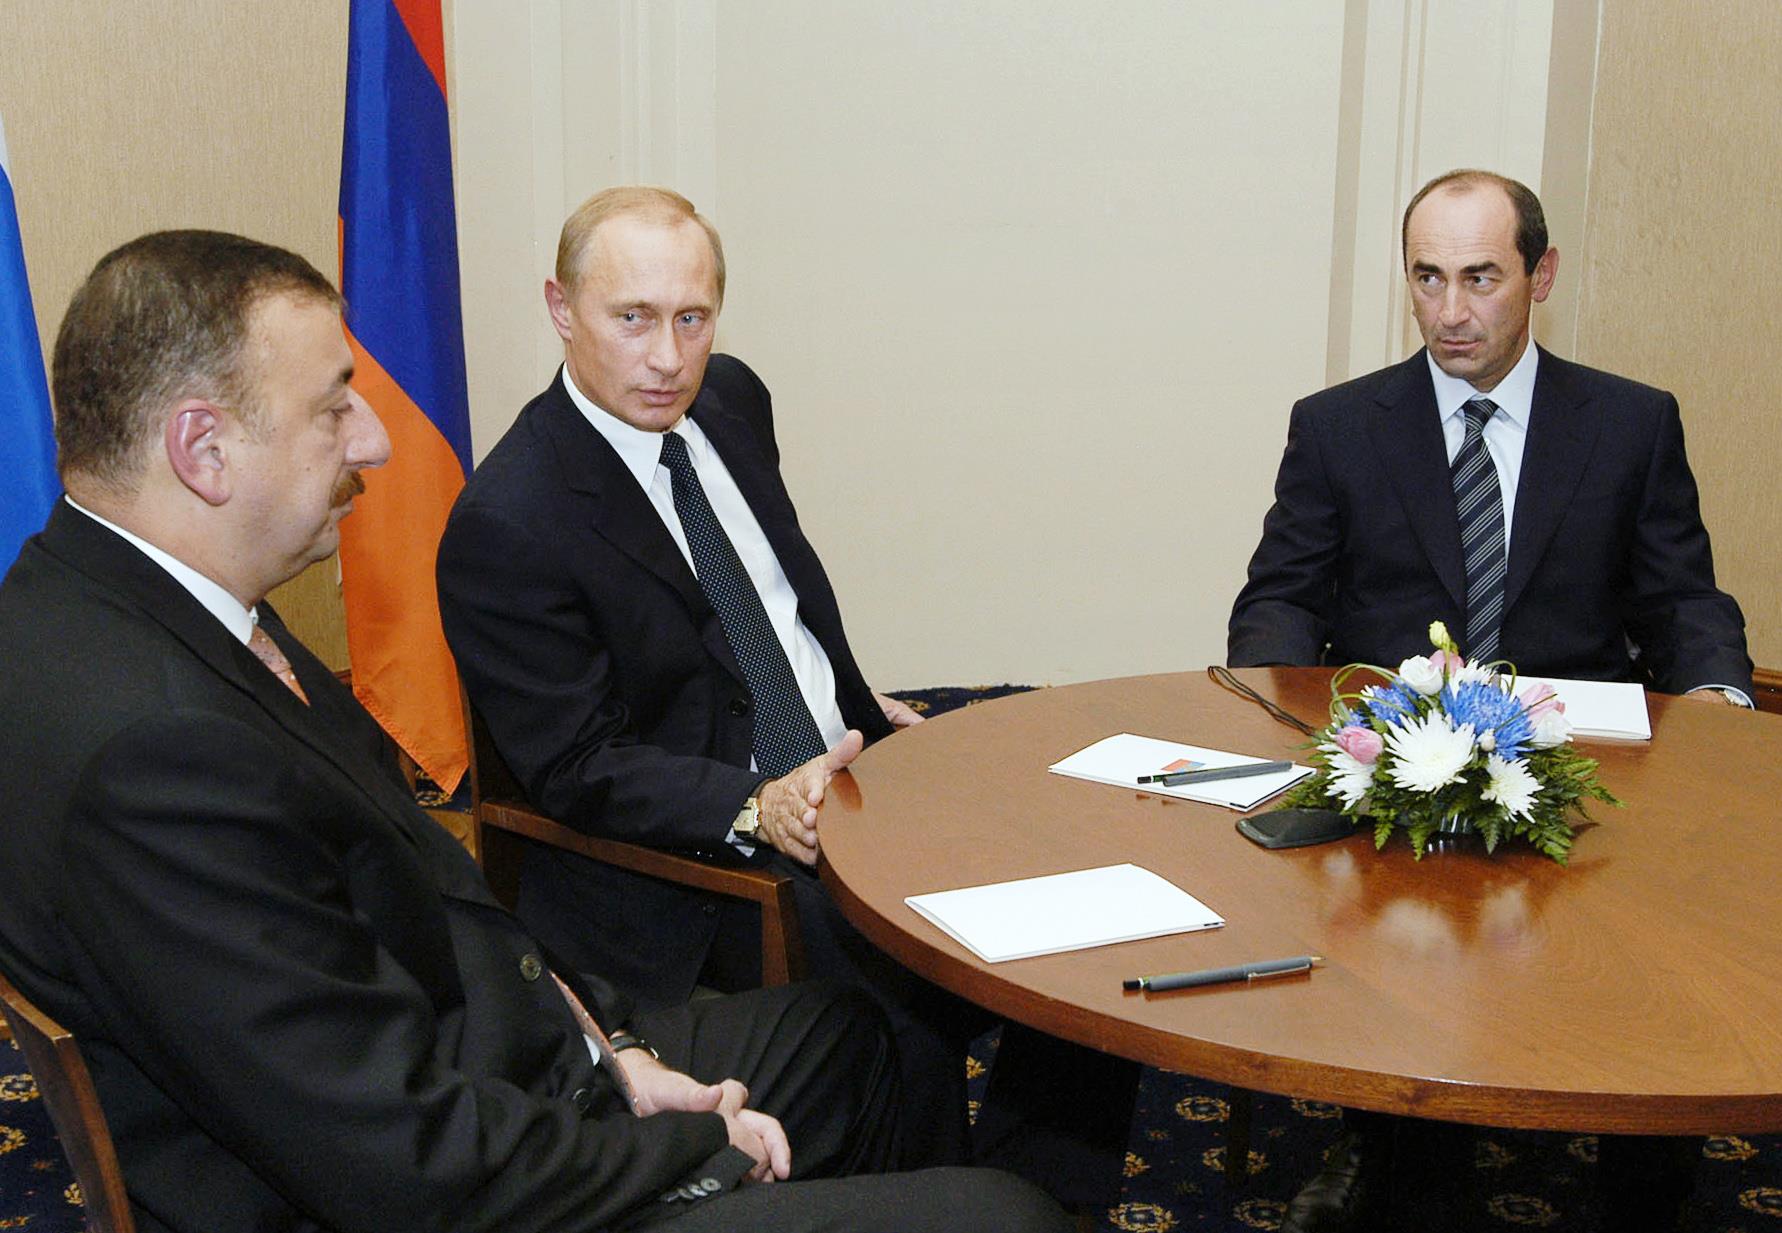 Ильхам Алиев, Владимир Путин и Роберт Кочарян. Этапы карабахского конфликта и попытки урегулирования